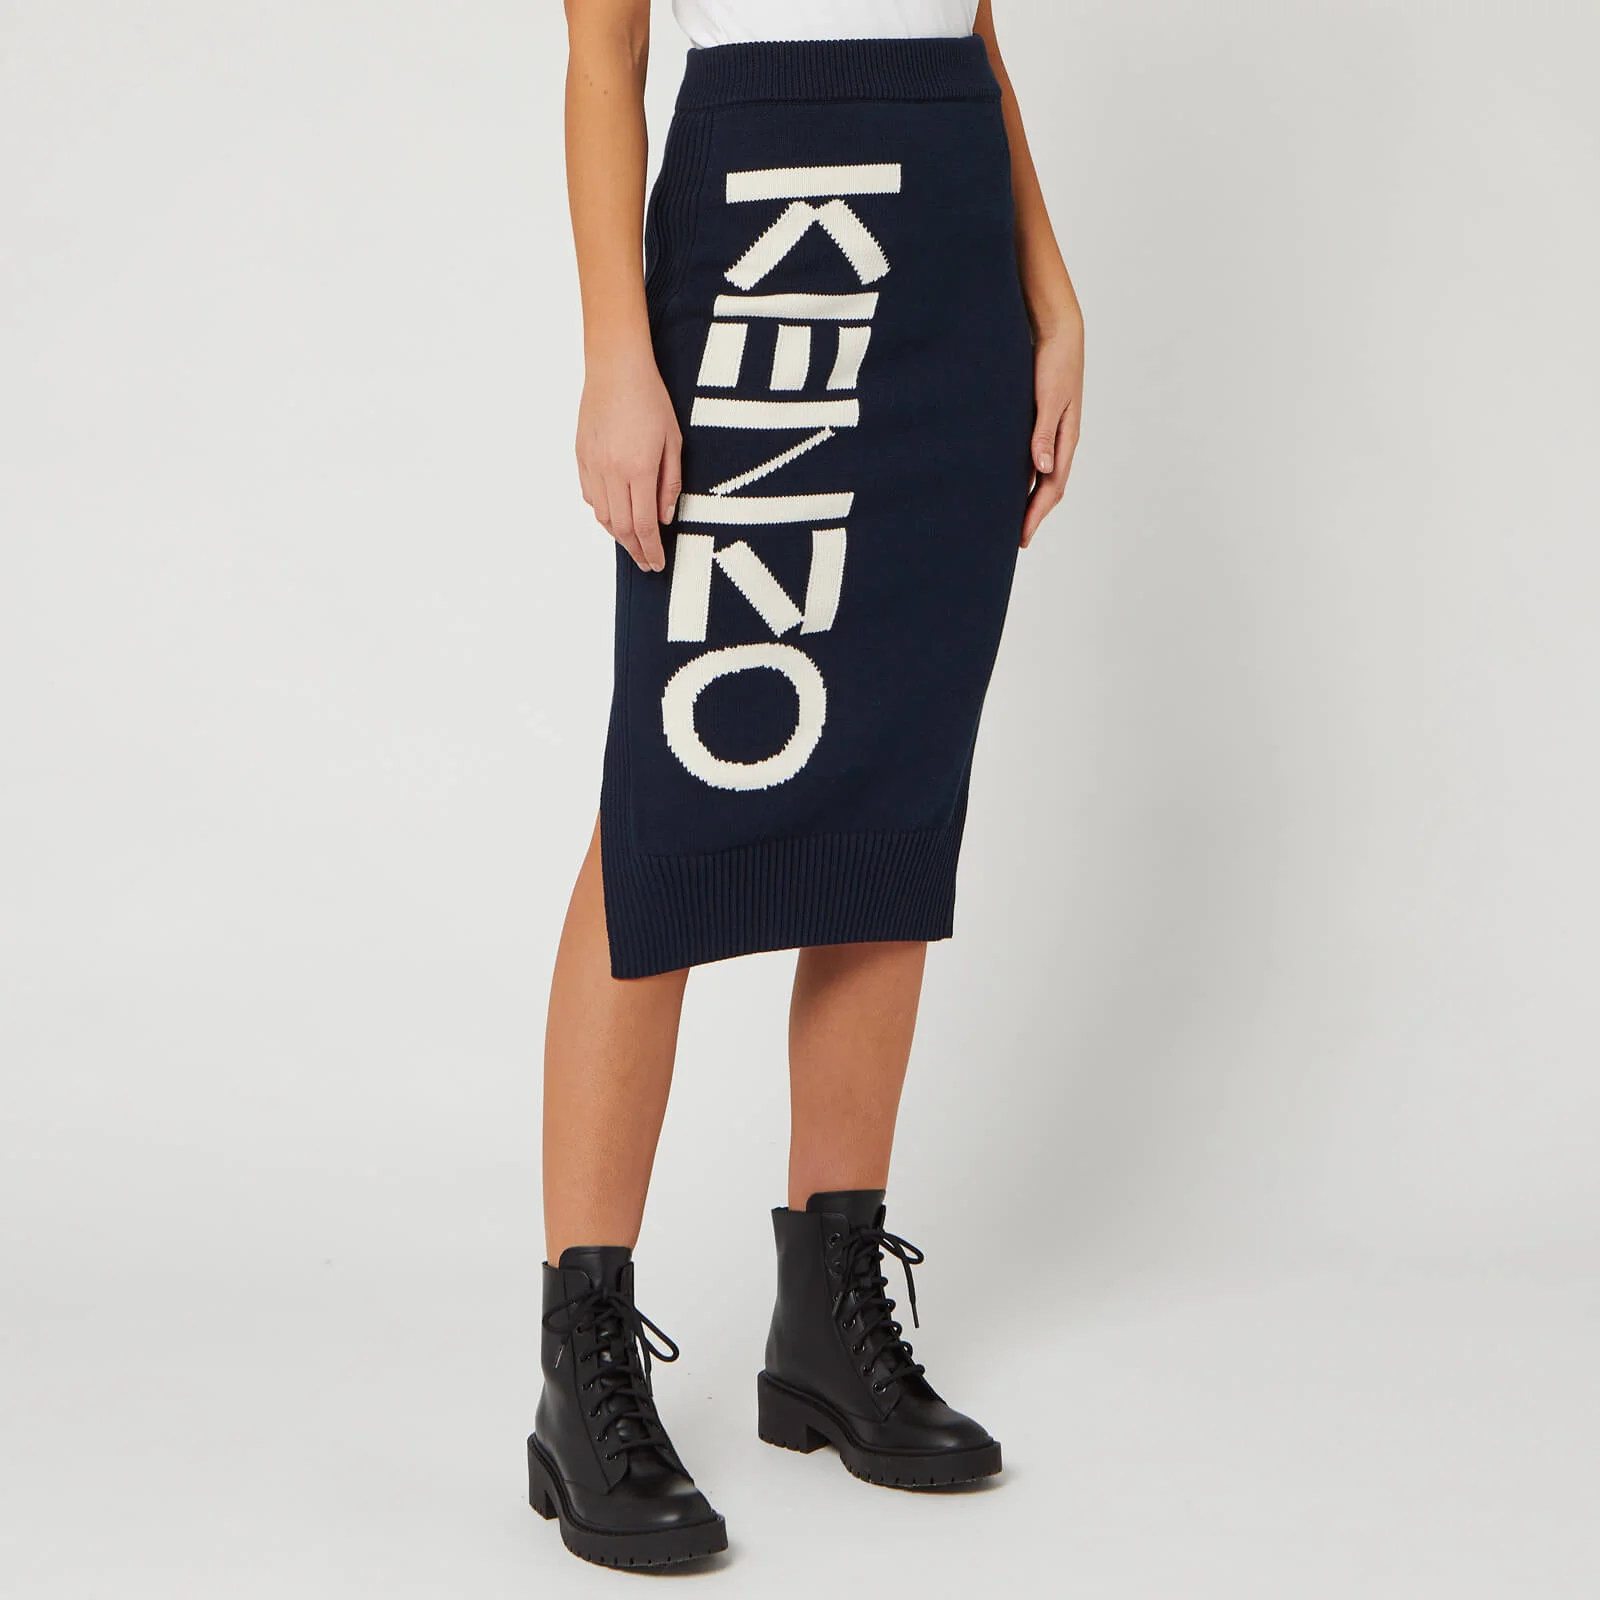 KENZO Women's Kenzo Sport Tube Skirt - Midnight Blue Image 1